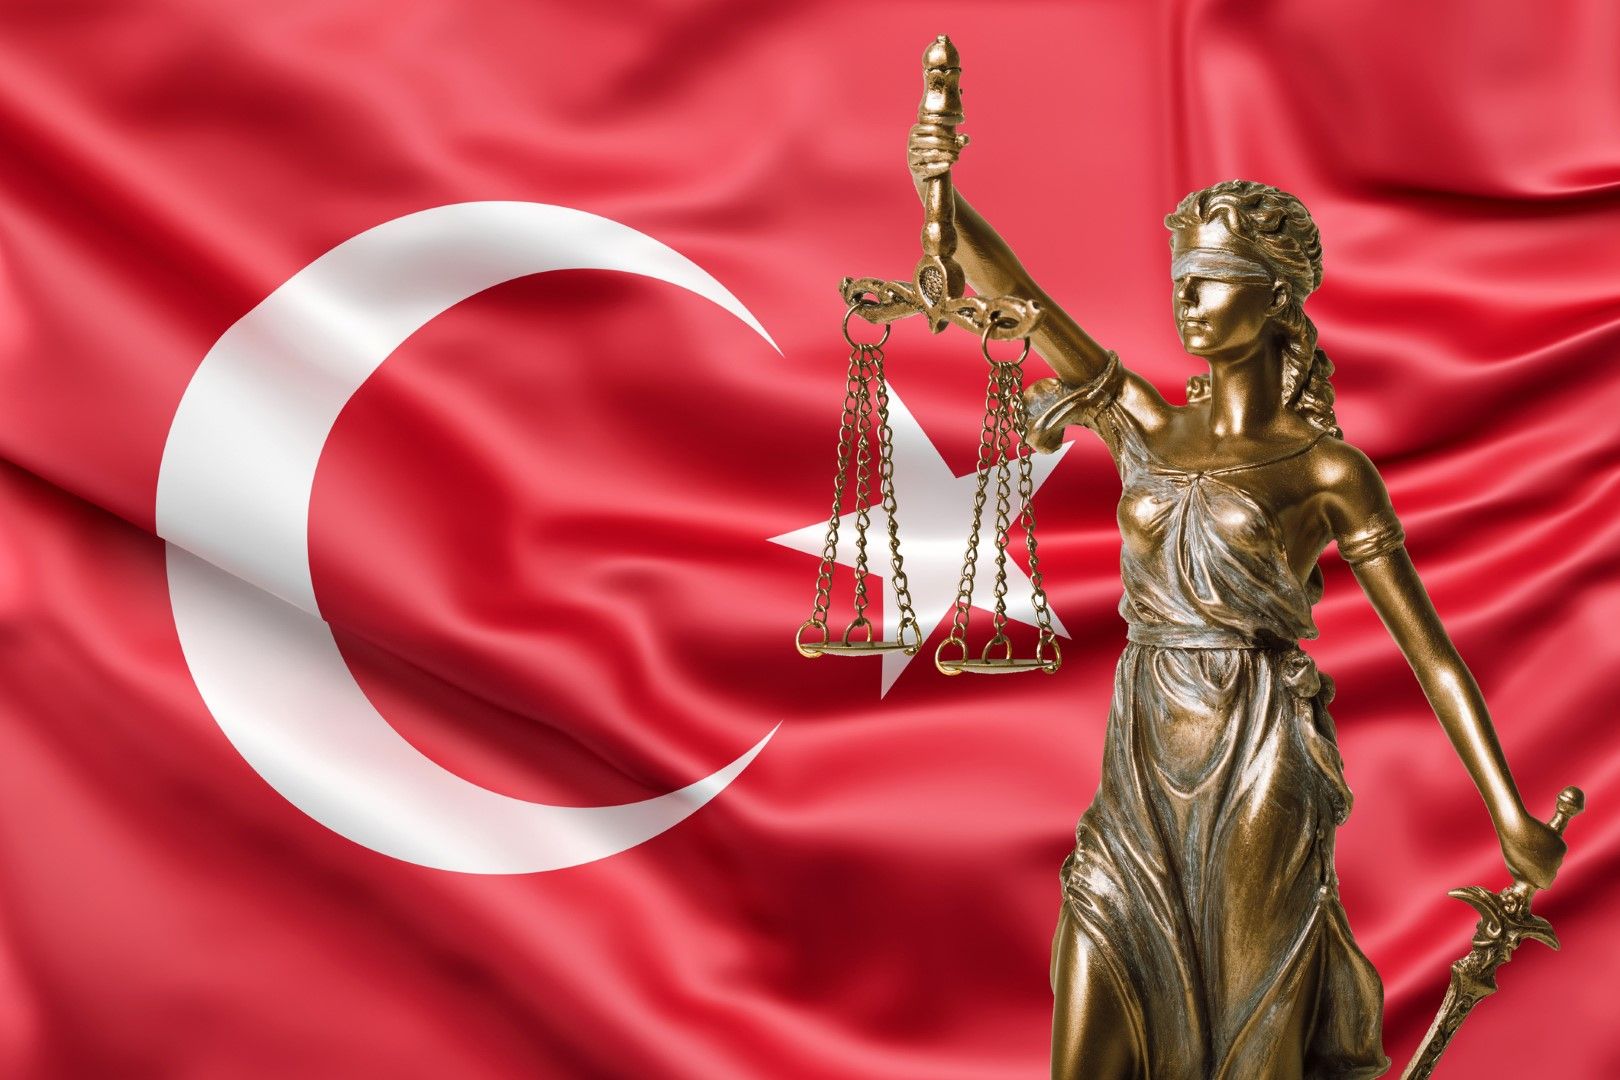 Критици твърдят, че турската съдебна система е използвана, за да наказва противници на президента Реджеп Тайип Ердоган, особено след опита за преврат през 2016 г., отбелязва Ройтрес. Президентът и неговата управляваща Партия на справедливостта и развитиет